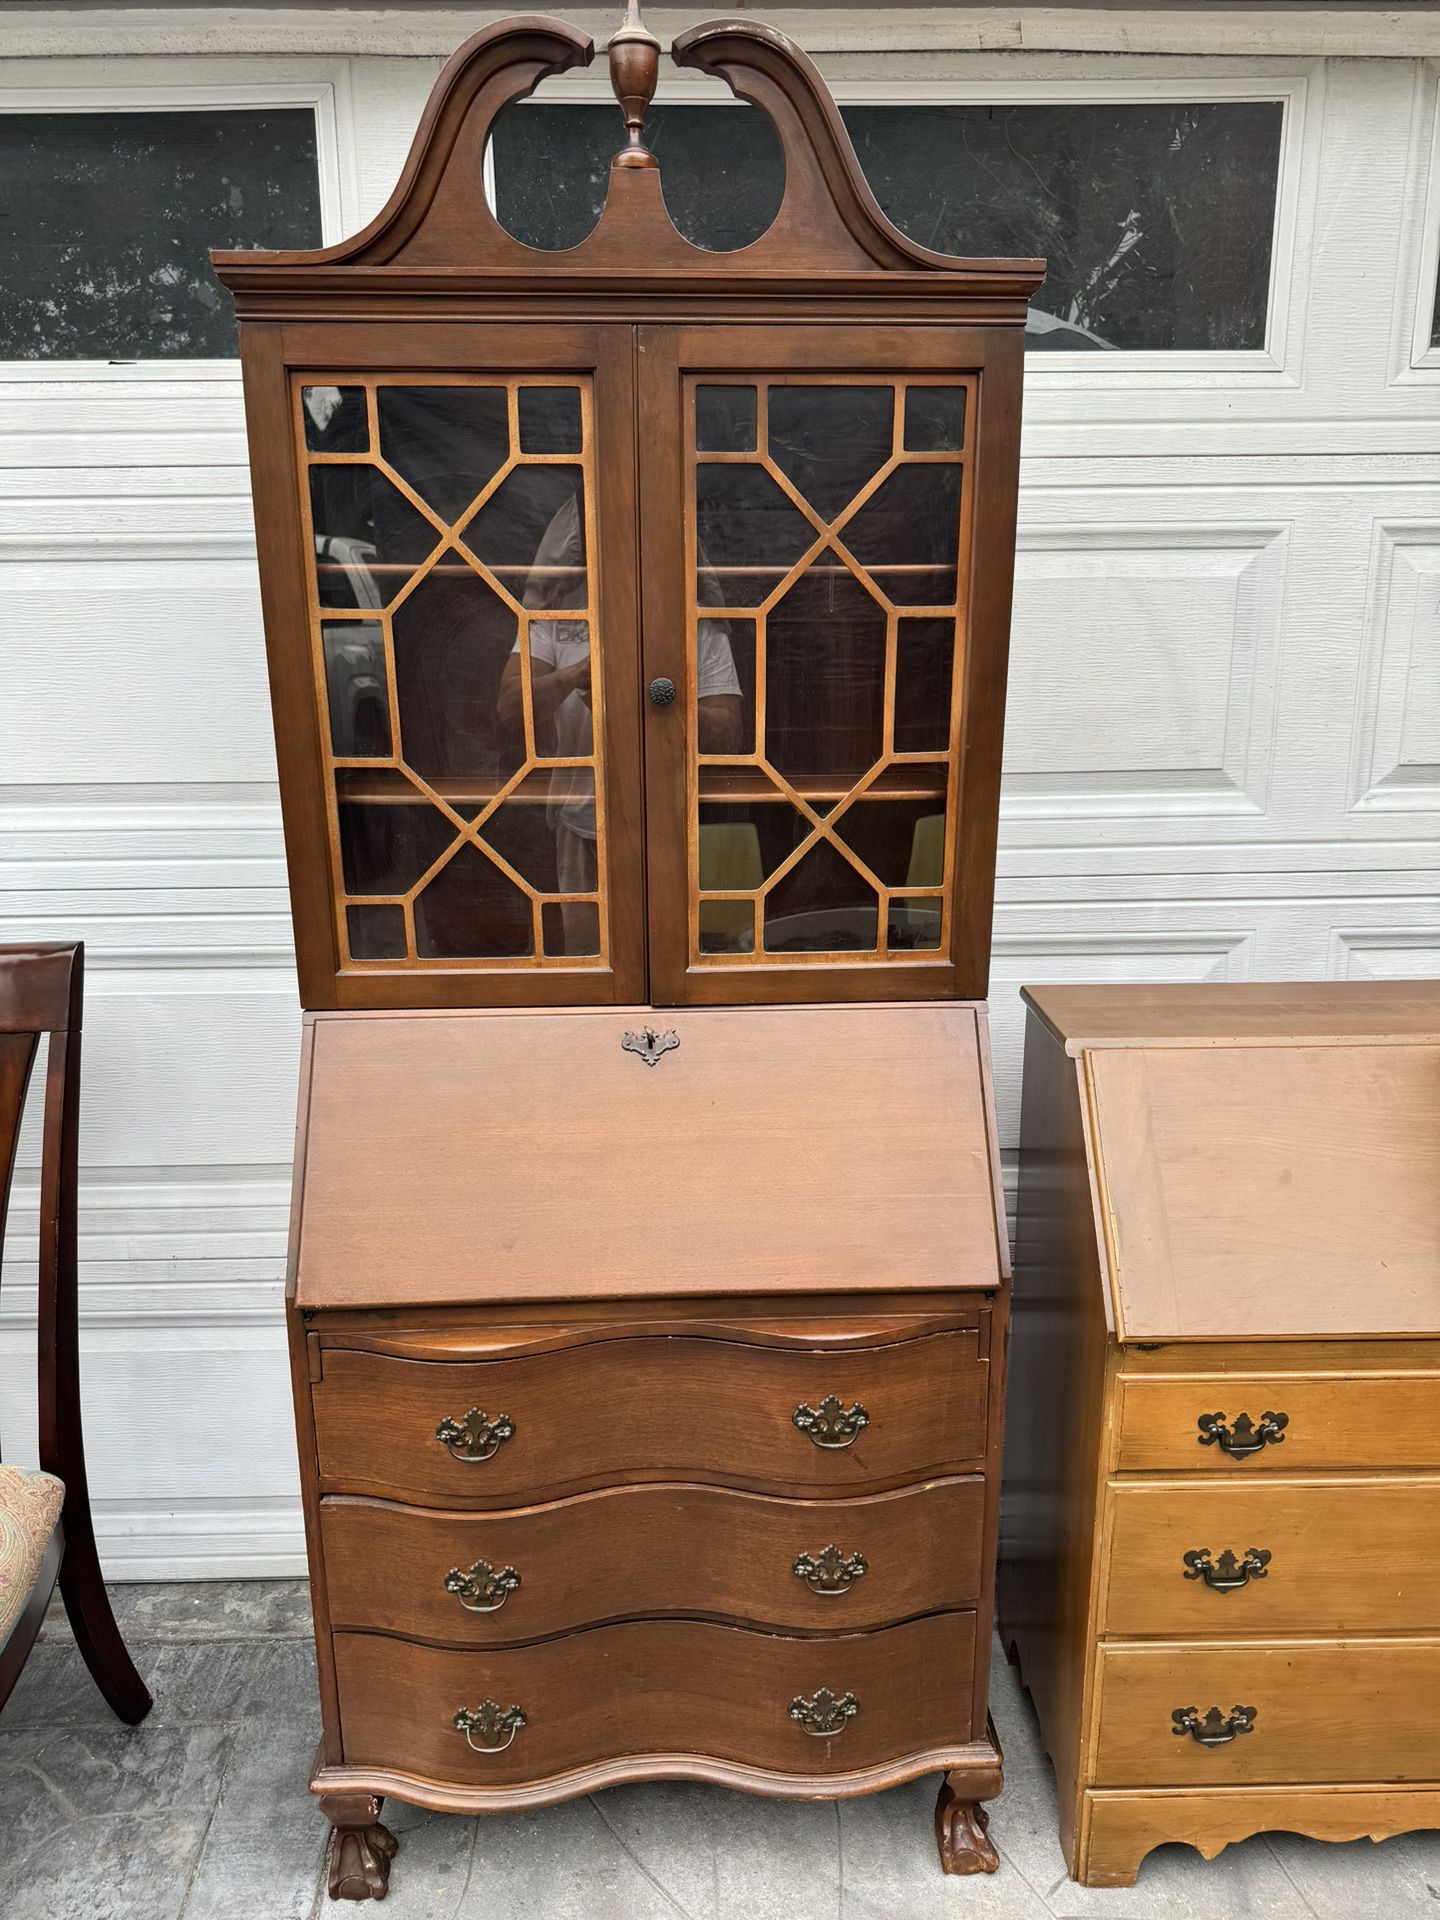 Antique 1940’s circa solid wood tall display curio cabinet secretary desk, 3-drawer dresser w/key  claw feet .